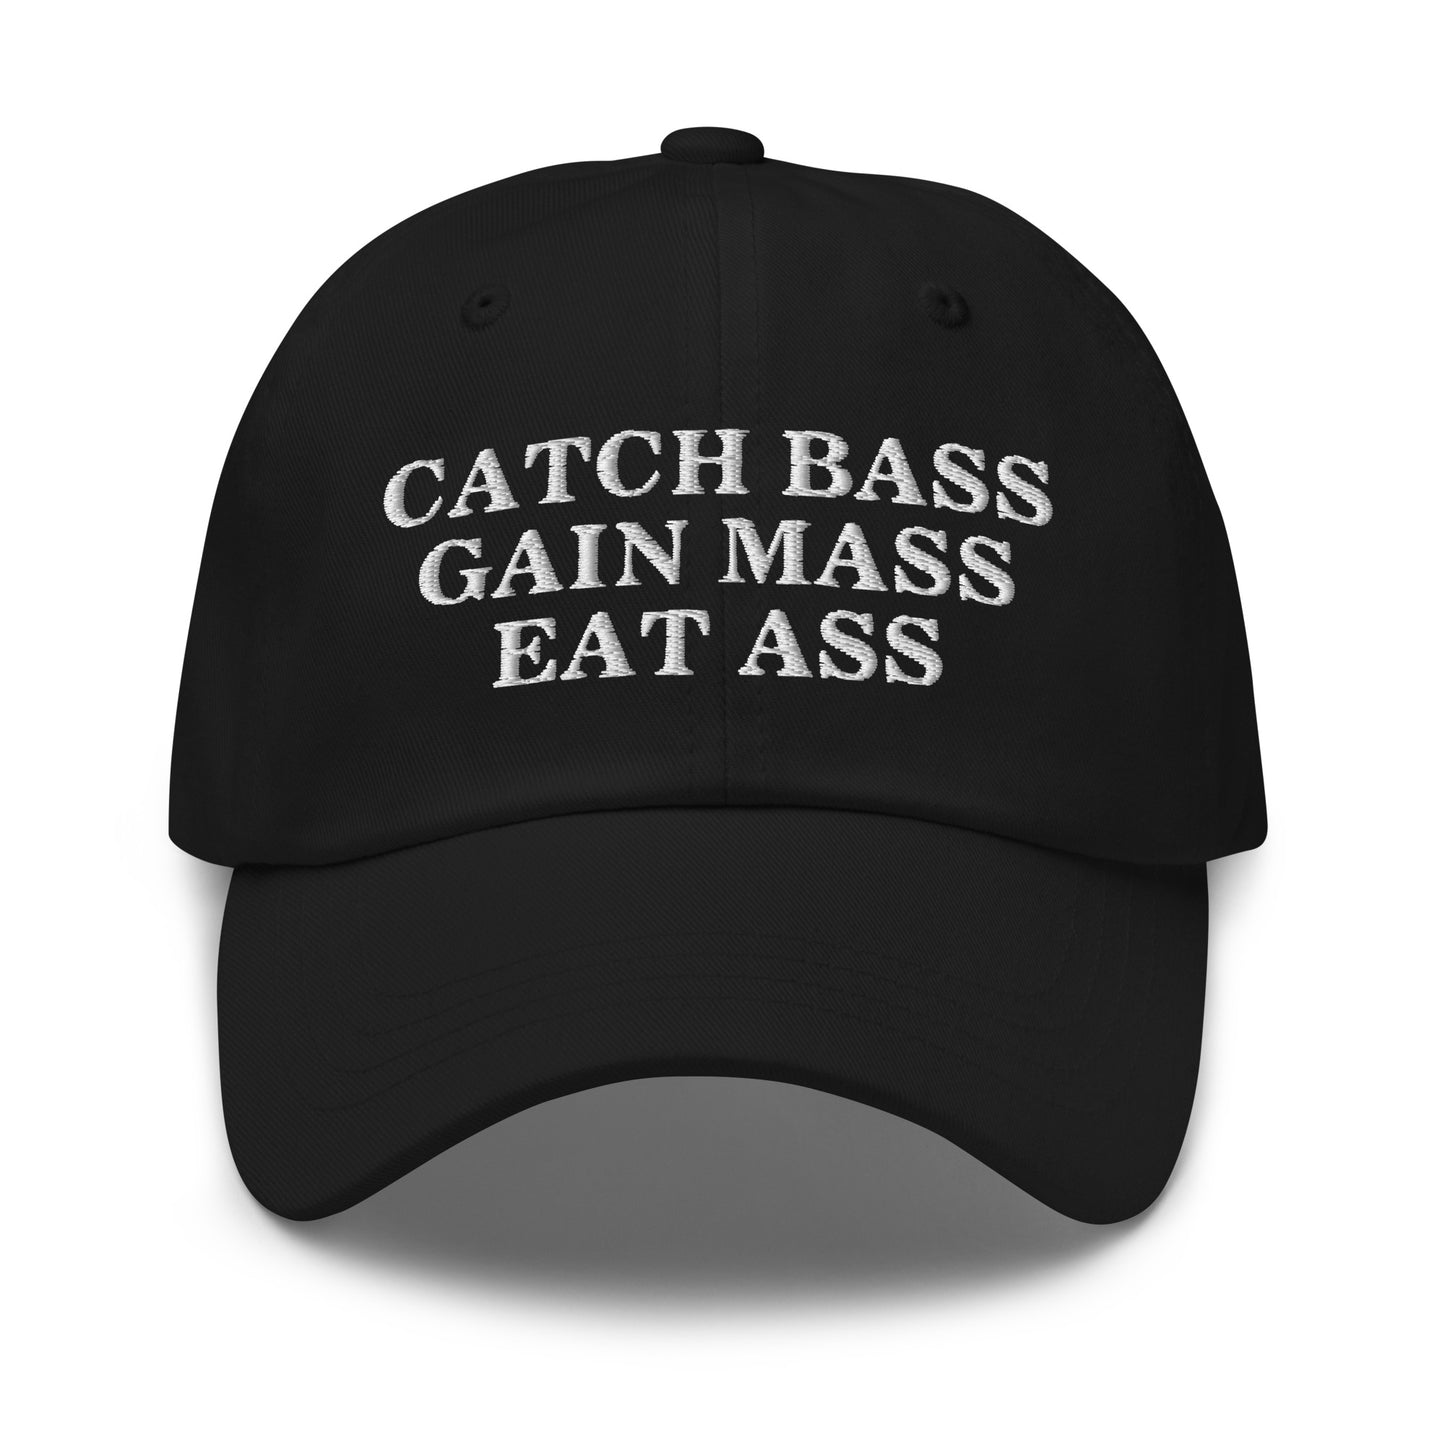 Catch Bass Gain Mass Eat Ass hat